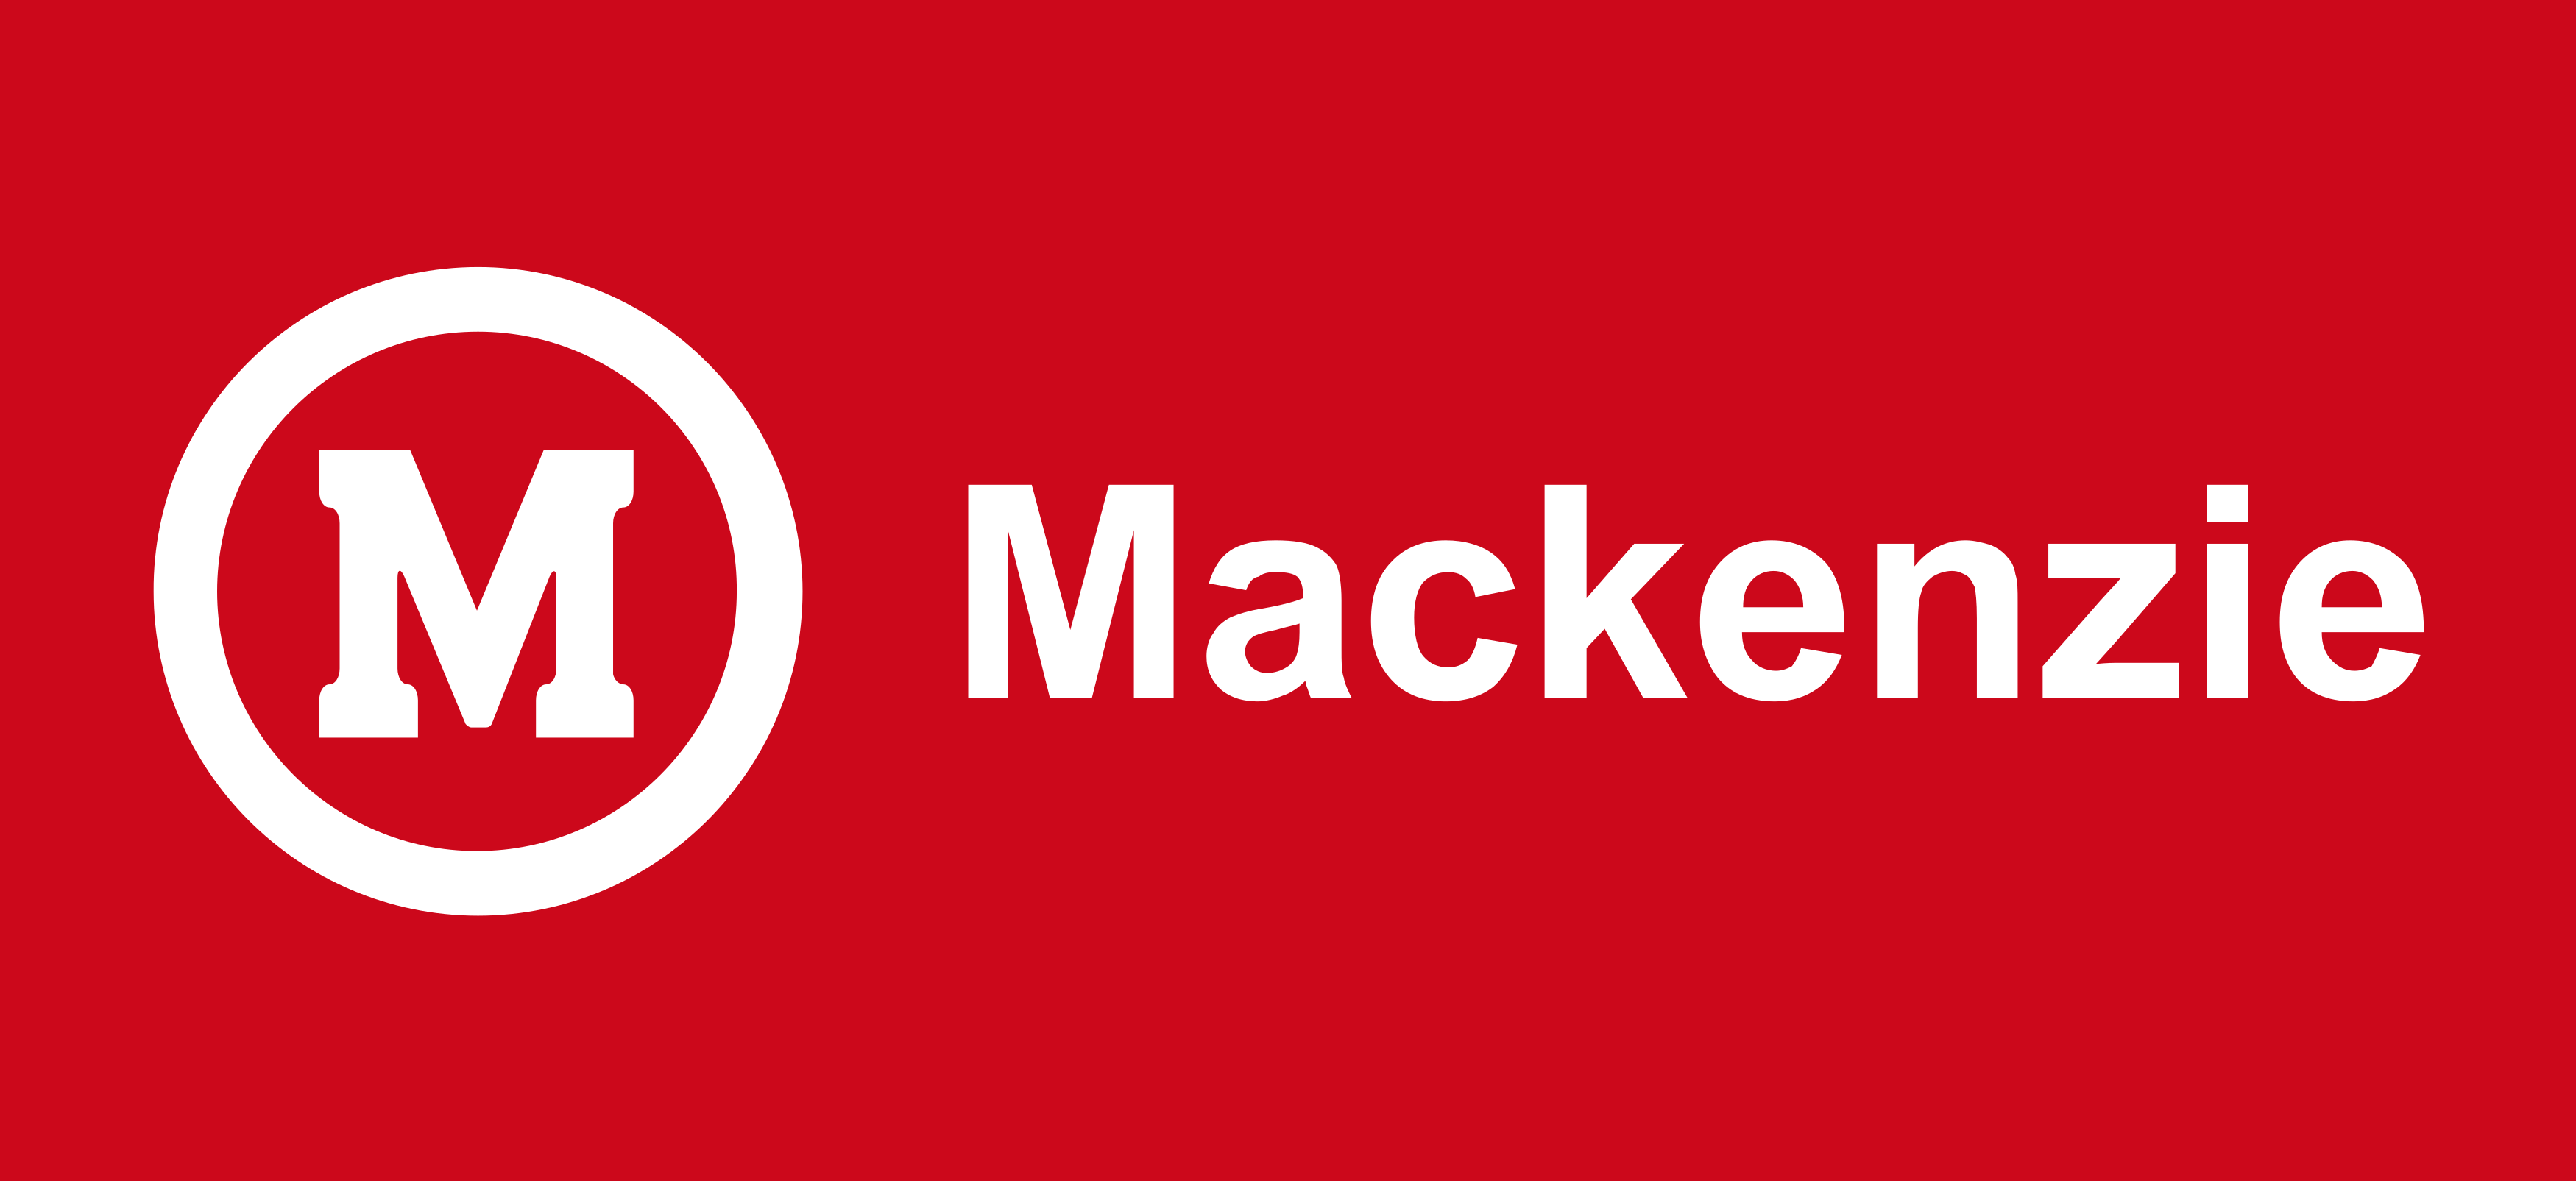 Mackenzie logo.